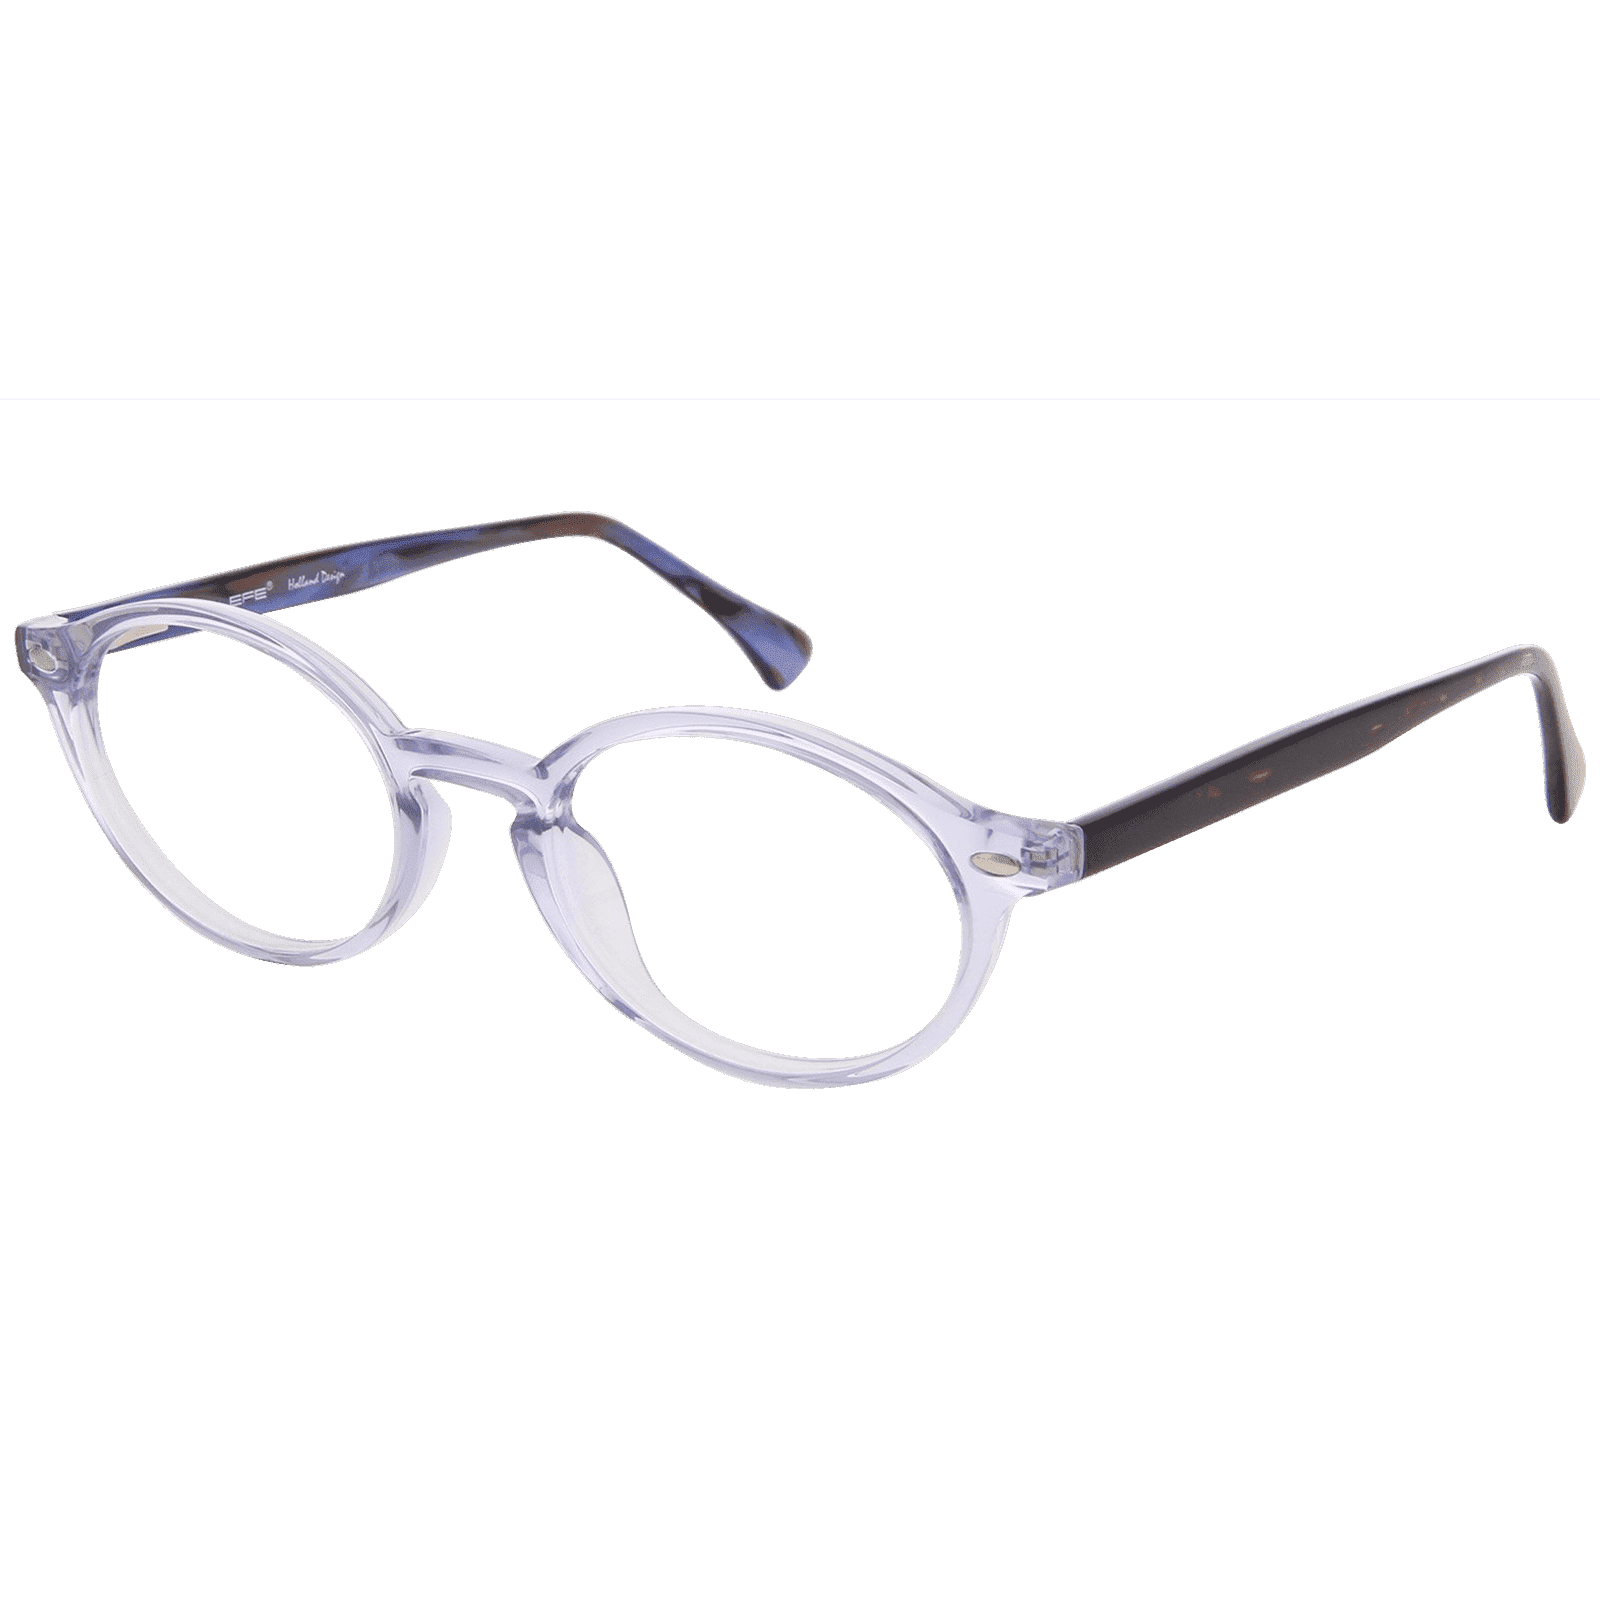 Heidi - Oval Blue Reading Glasses for Women